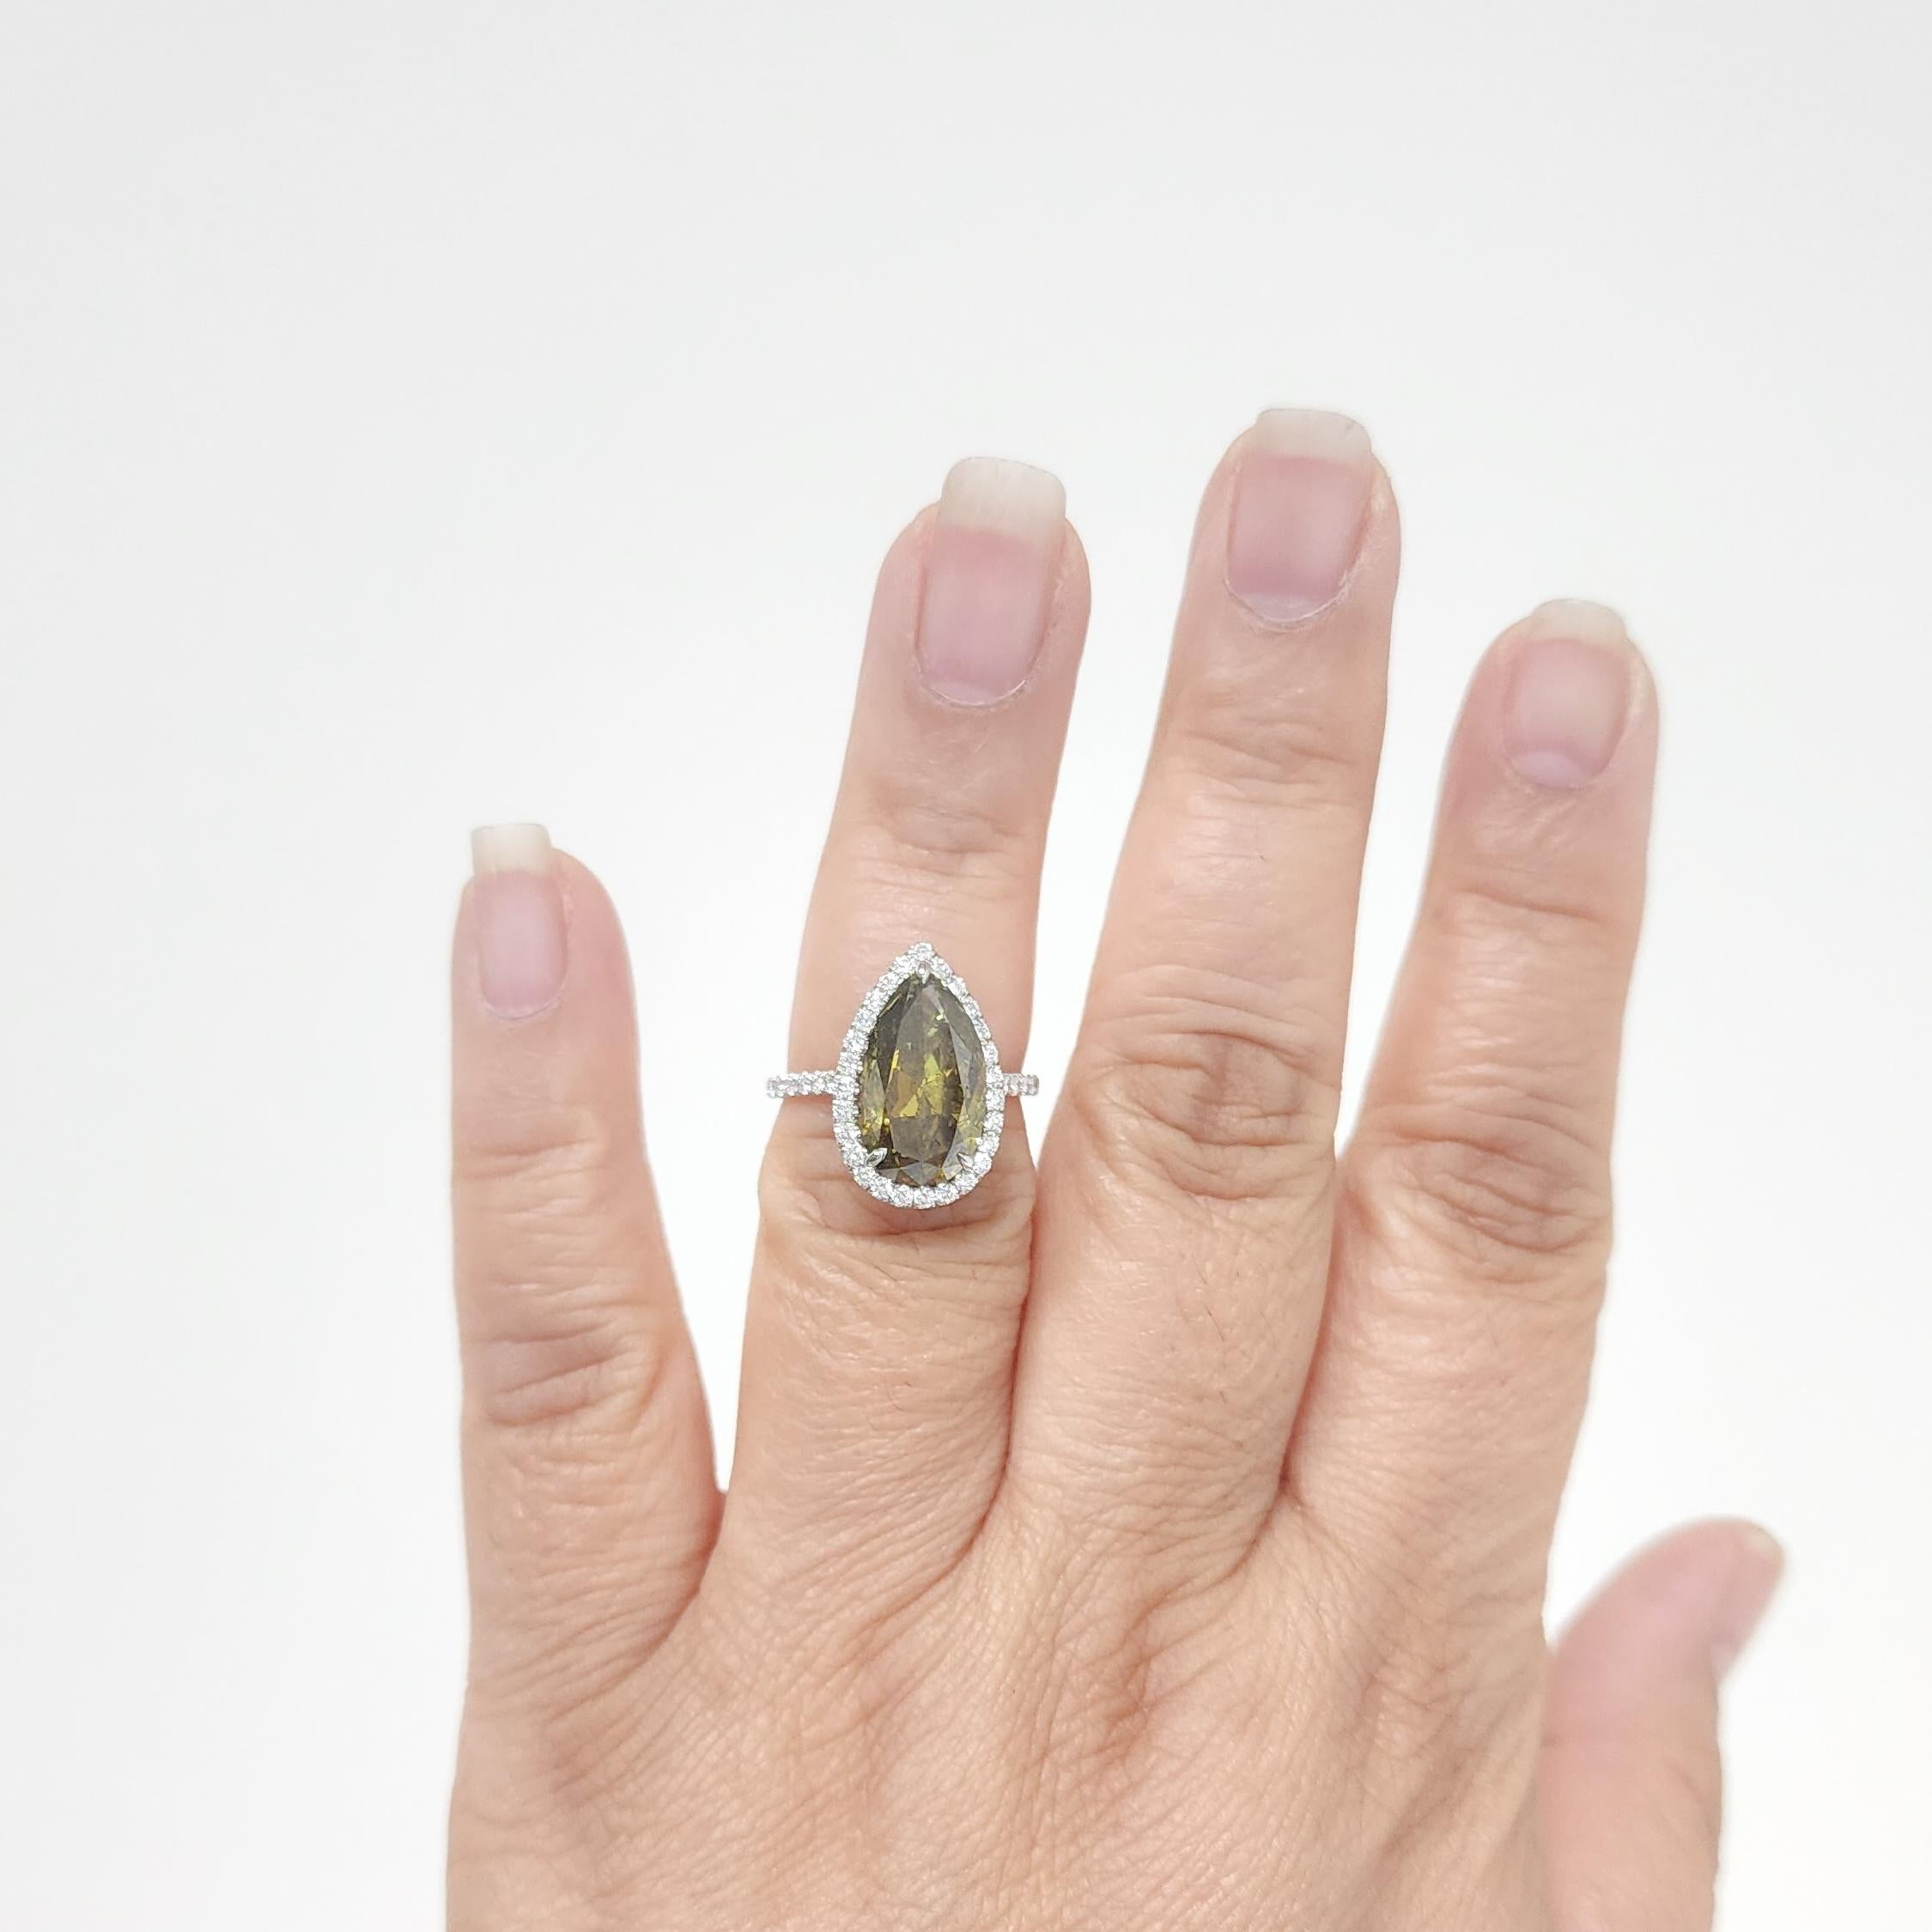 Wunderschöne 3,97 ct. GIA-zertifizierte Diamant Birne Form mit 0,54 ct. gute Qualität weißer Diamanten rund pave.  Handgefertigt in Platin.  Ring Größe 6,5.
Inklusive GIA-Zertifikat.